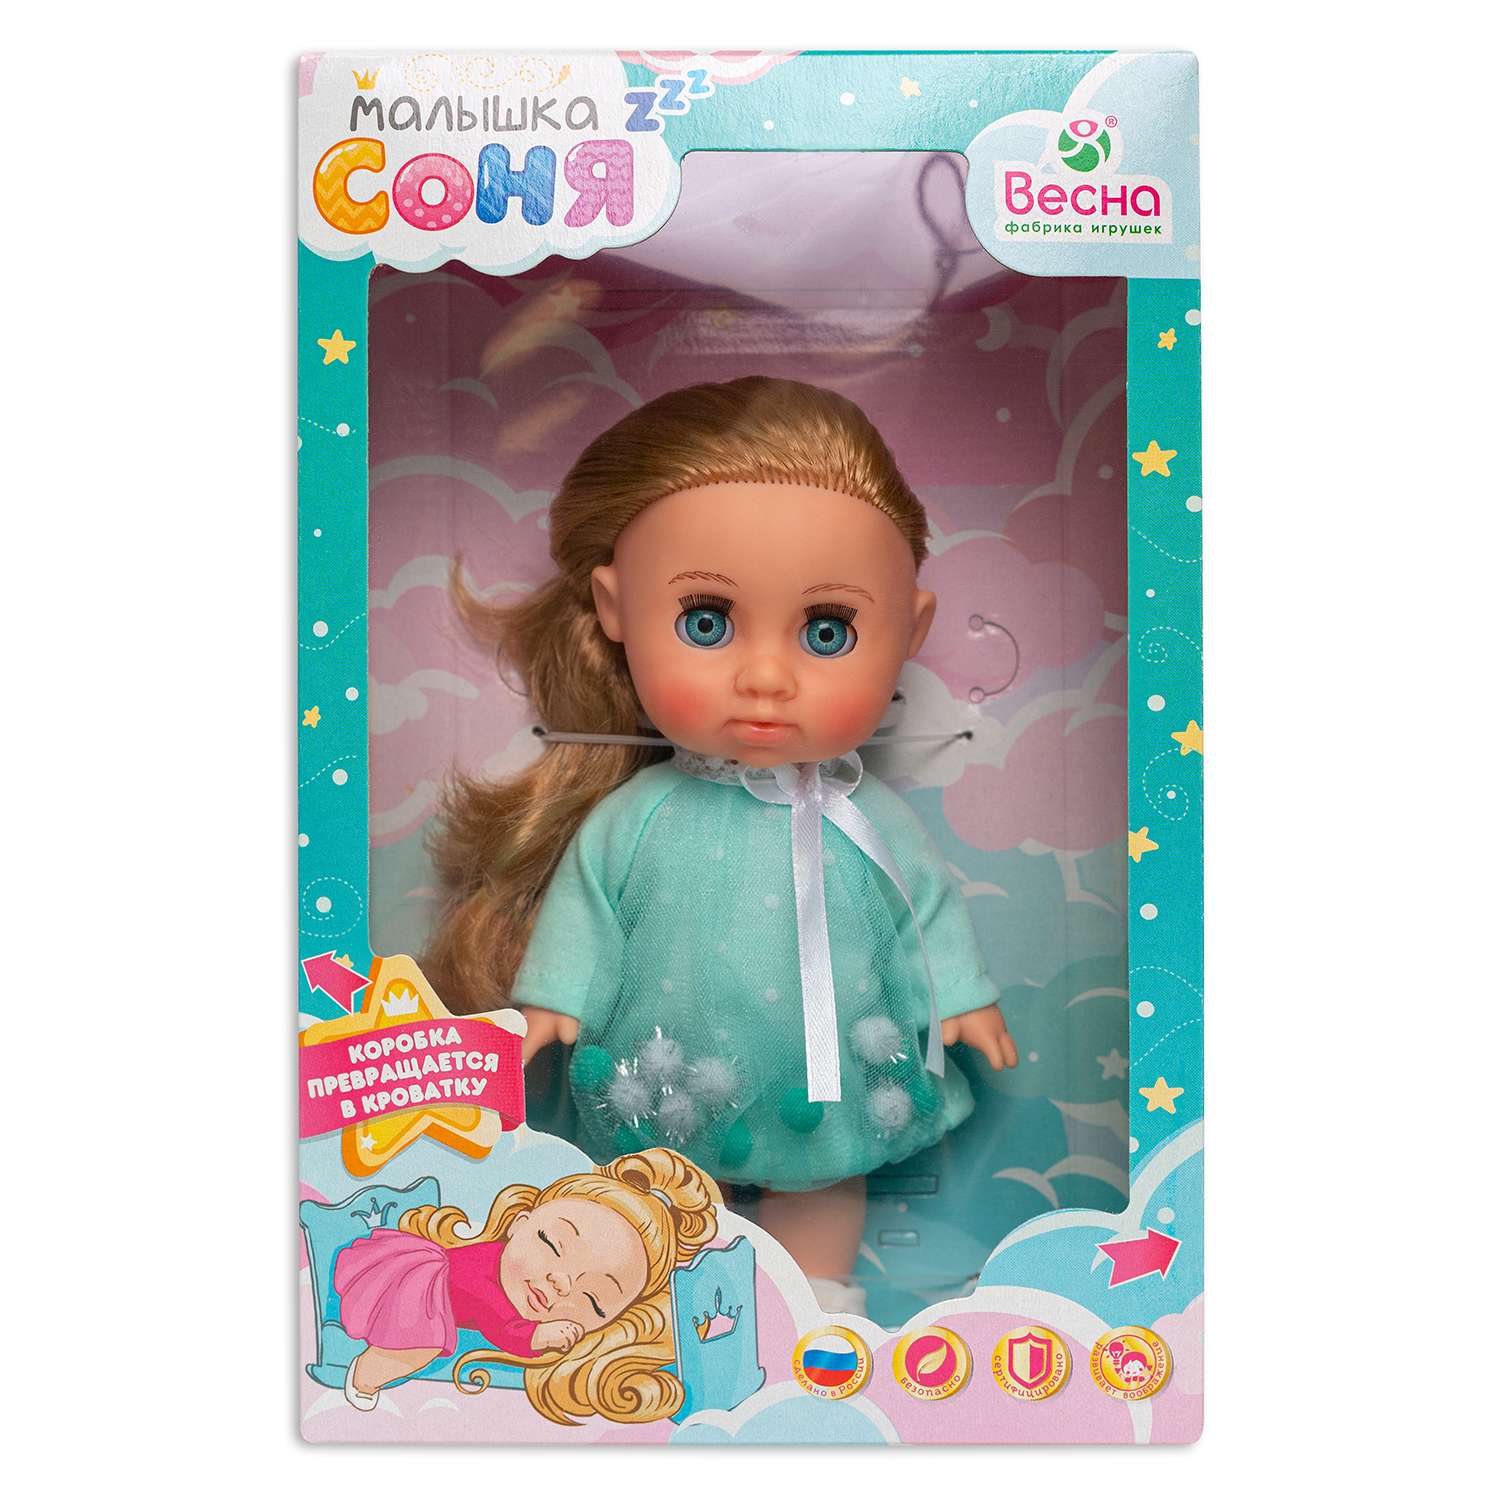 Кукла ВЕСНА Малышка Соня 2 зефирка 22 см В4212 - фото 6